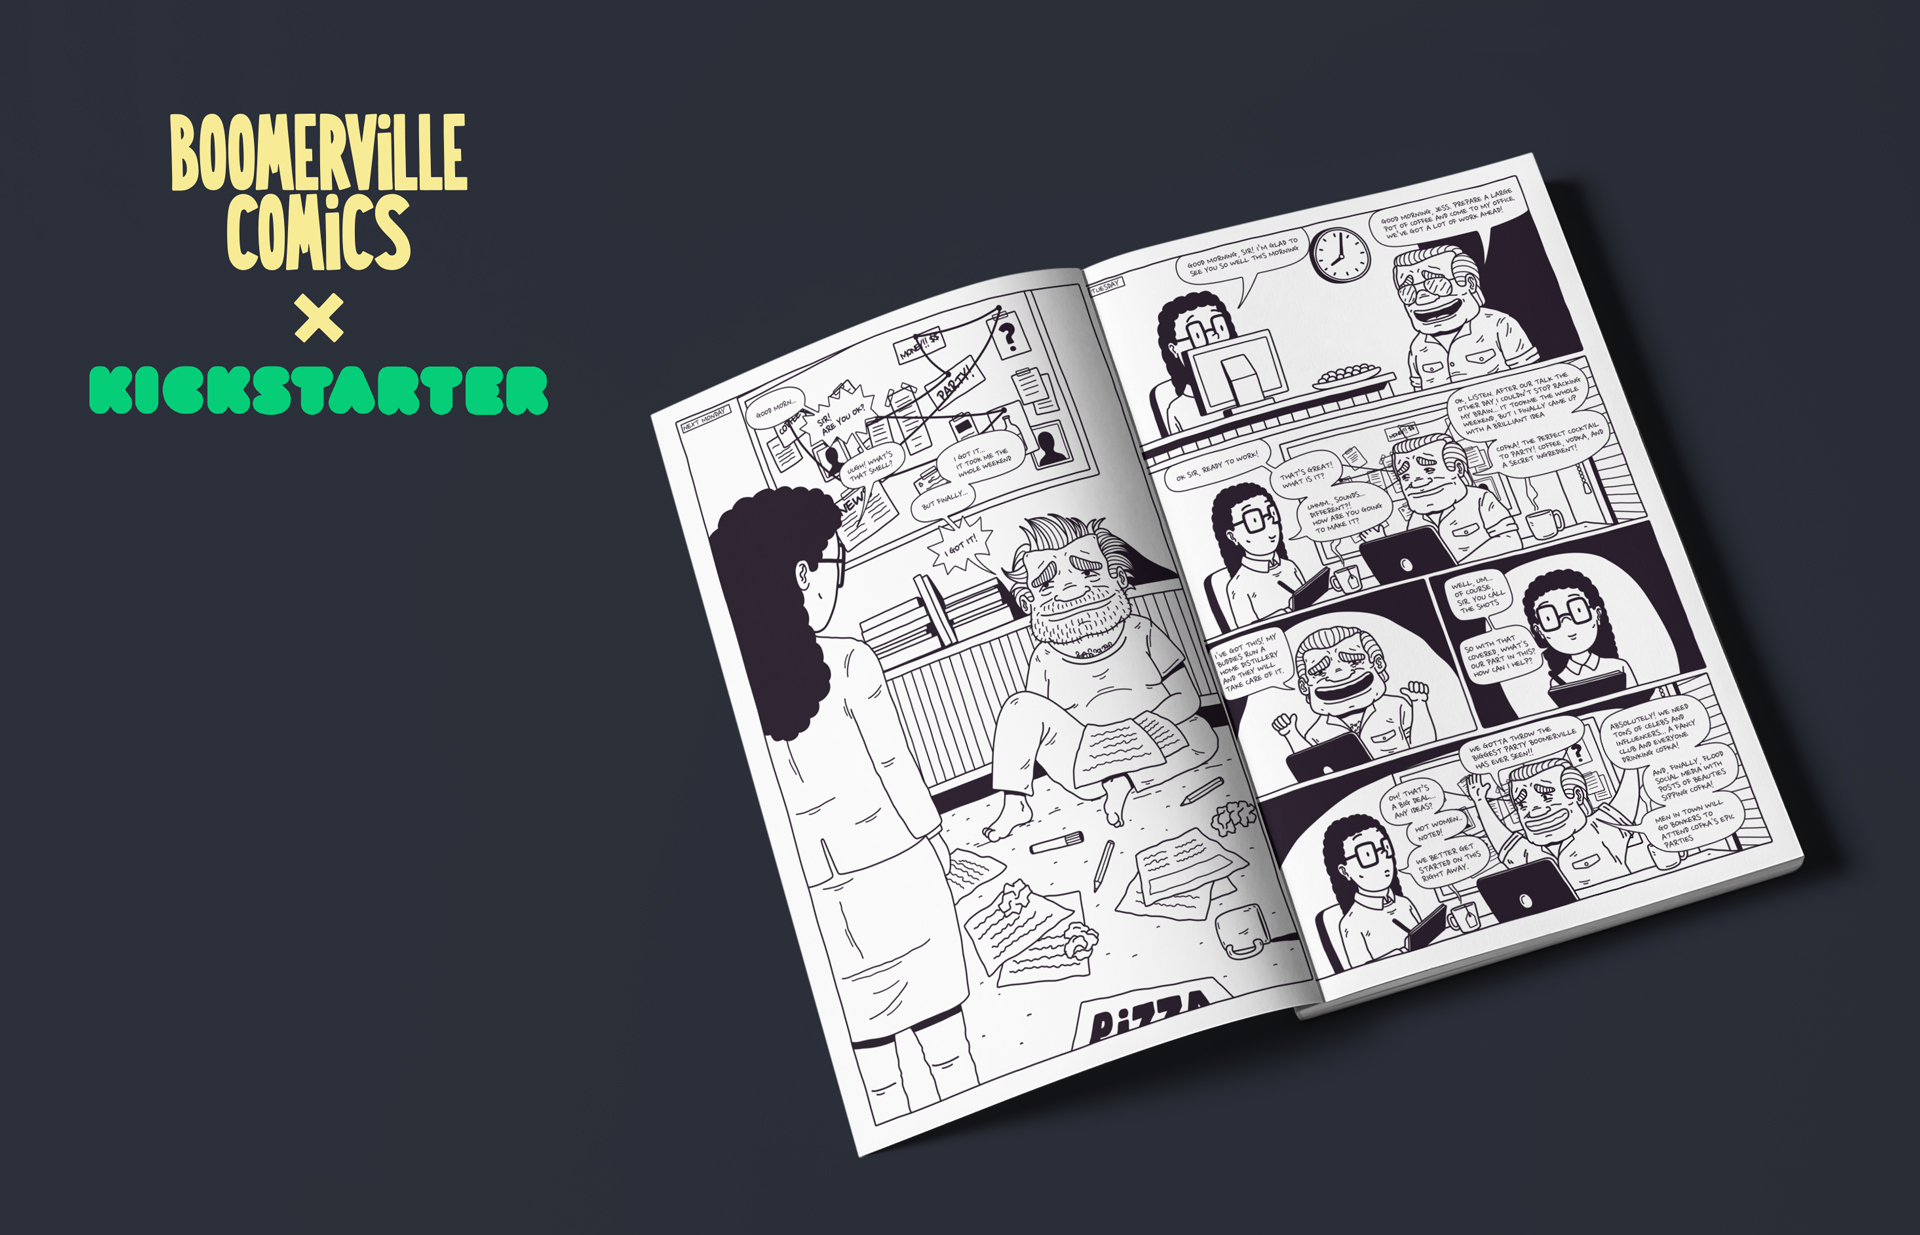 Boomerville Comics x Kickstarter